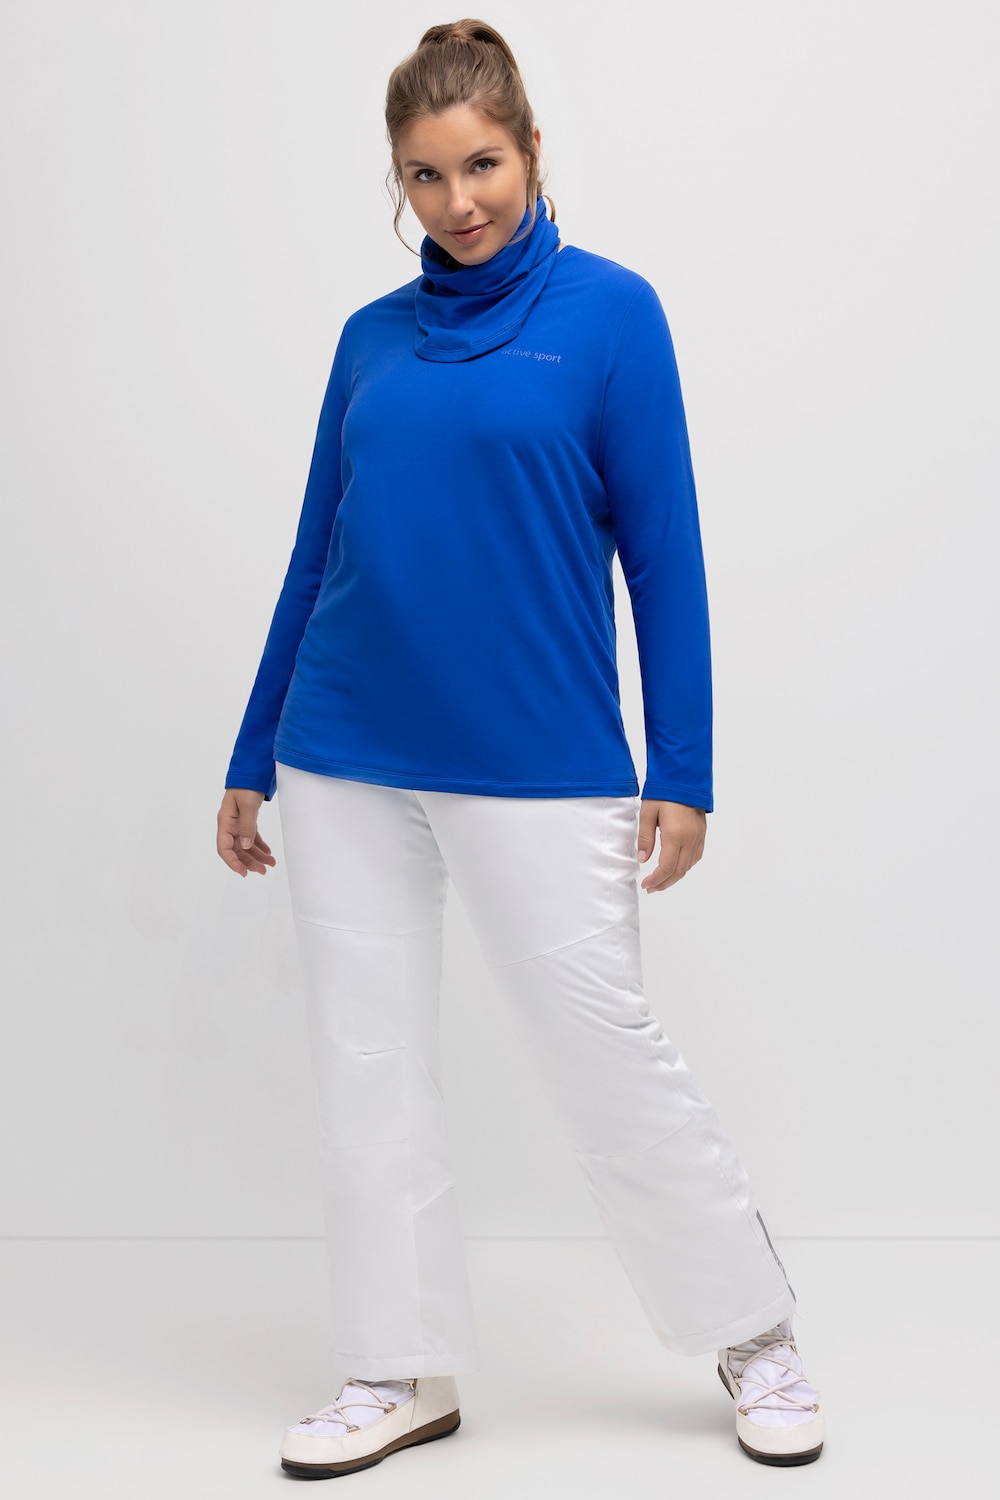 Grote Maten functioneel skishirt, Dames, blauw, Maat: 54/56, Polyester, Ulla Popken